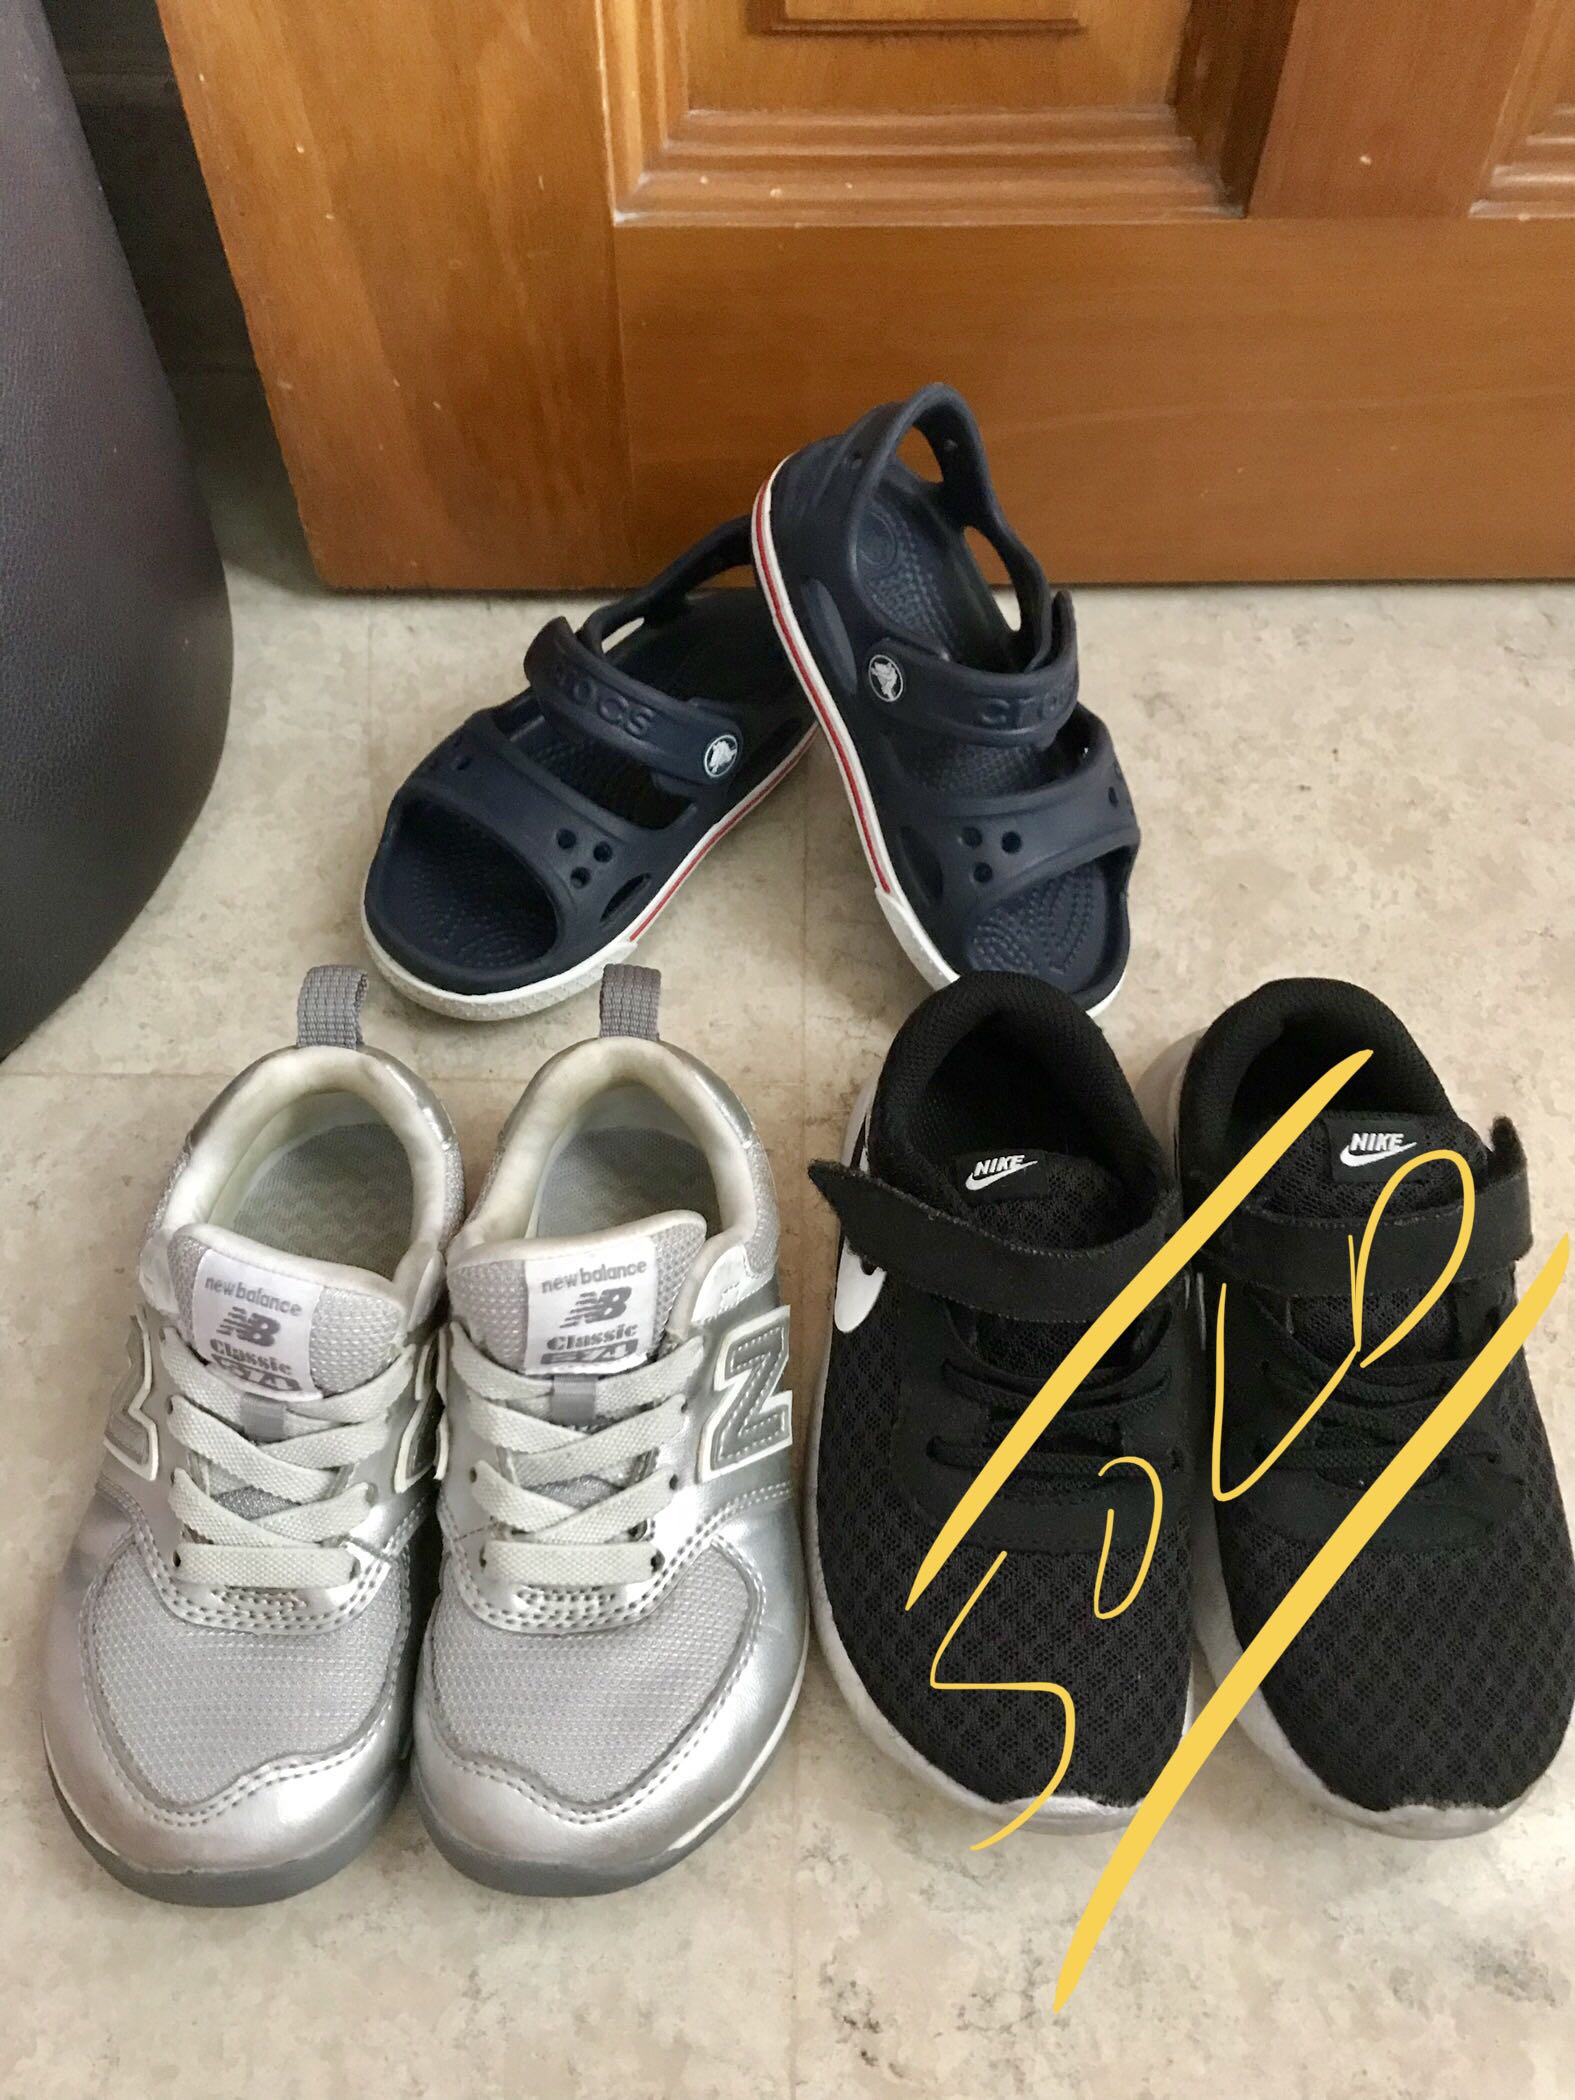 Kids shoes/ sandals / sport shoe/ New 